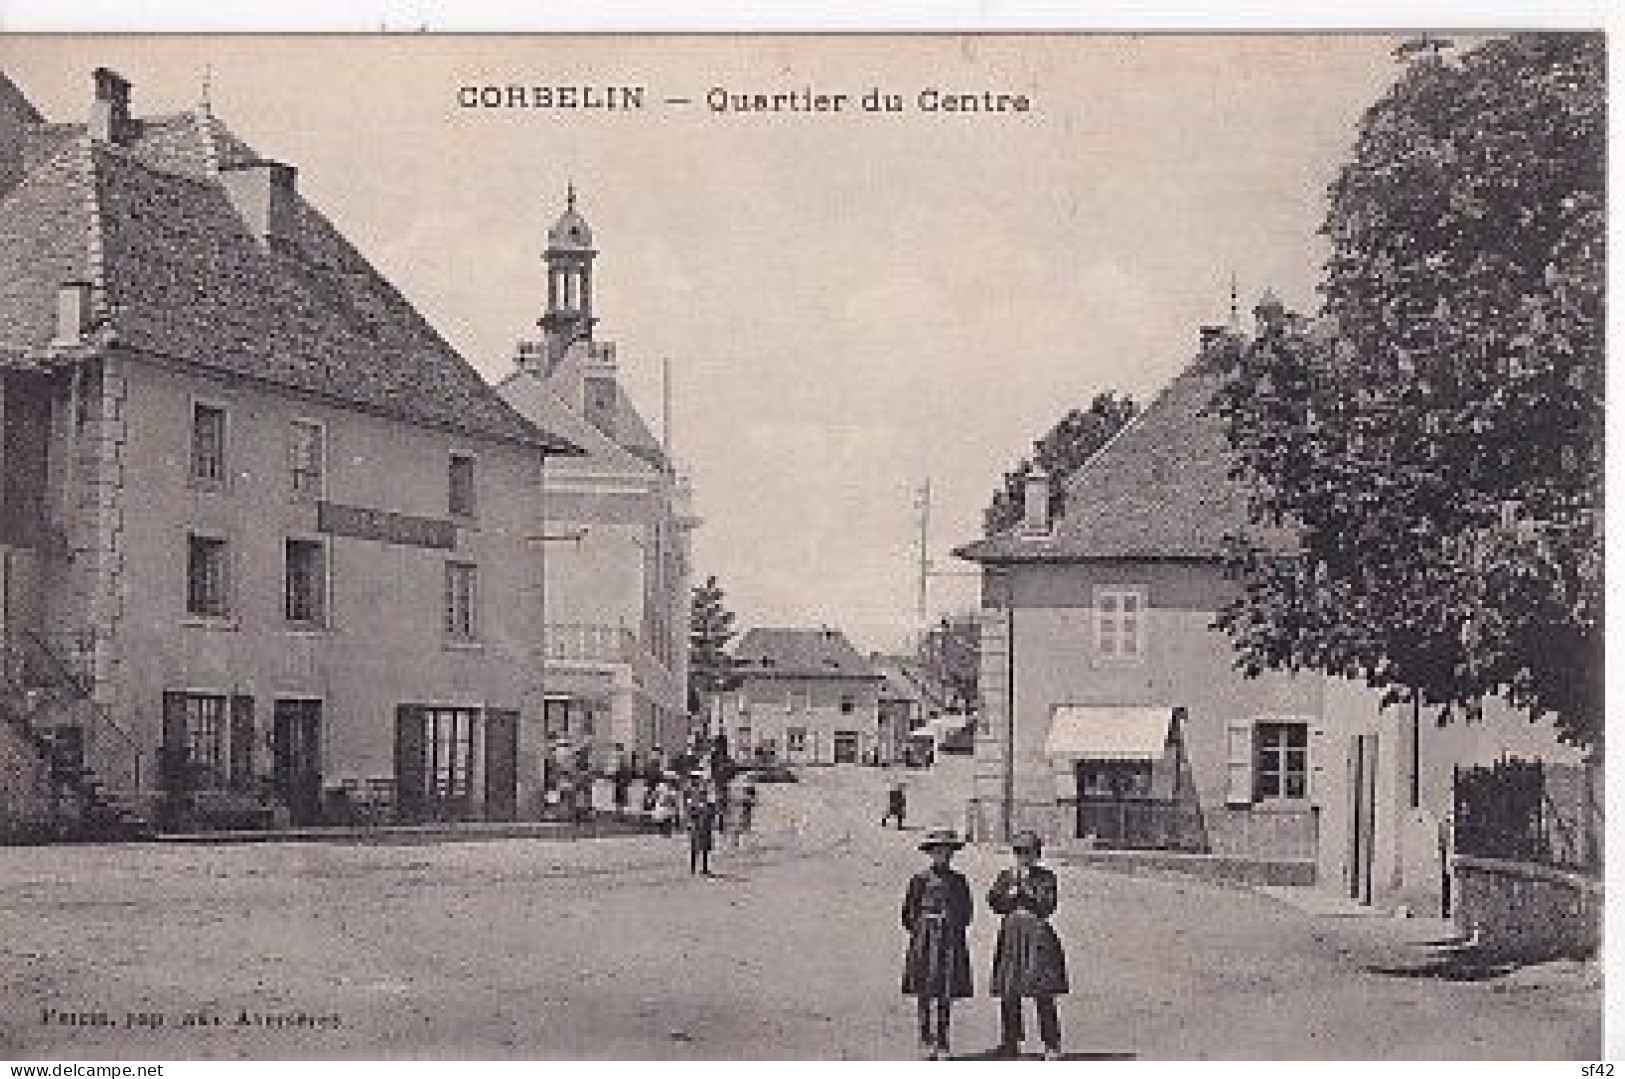 CORBELIN          QUARTIER DU CENTRE - Corbelin